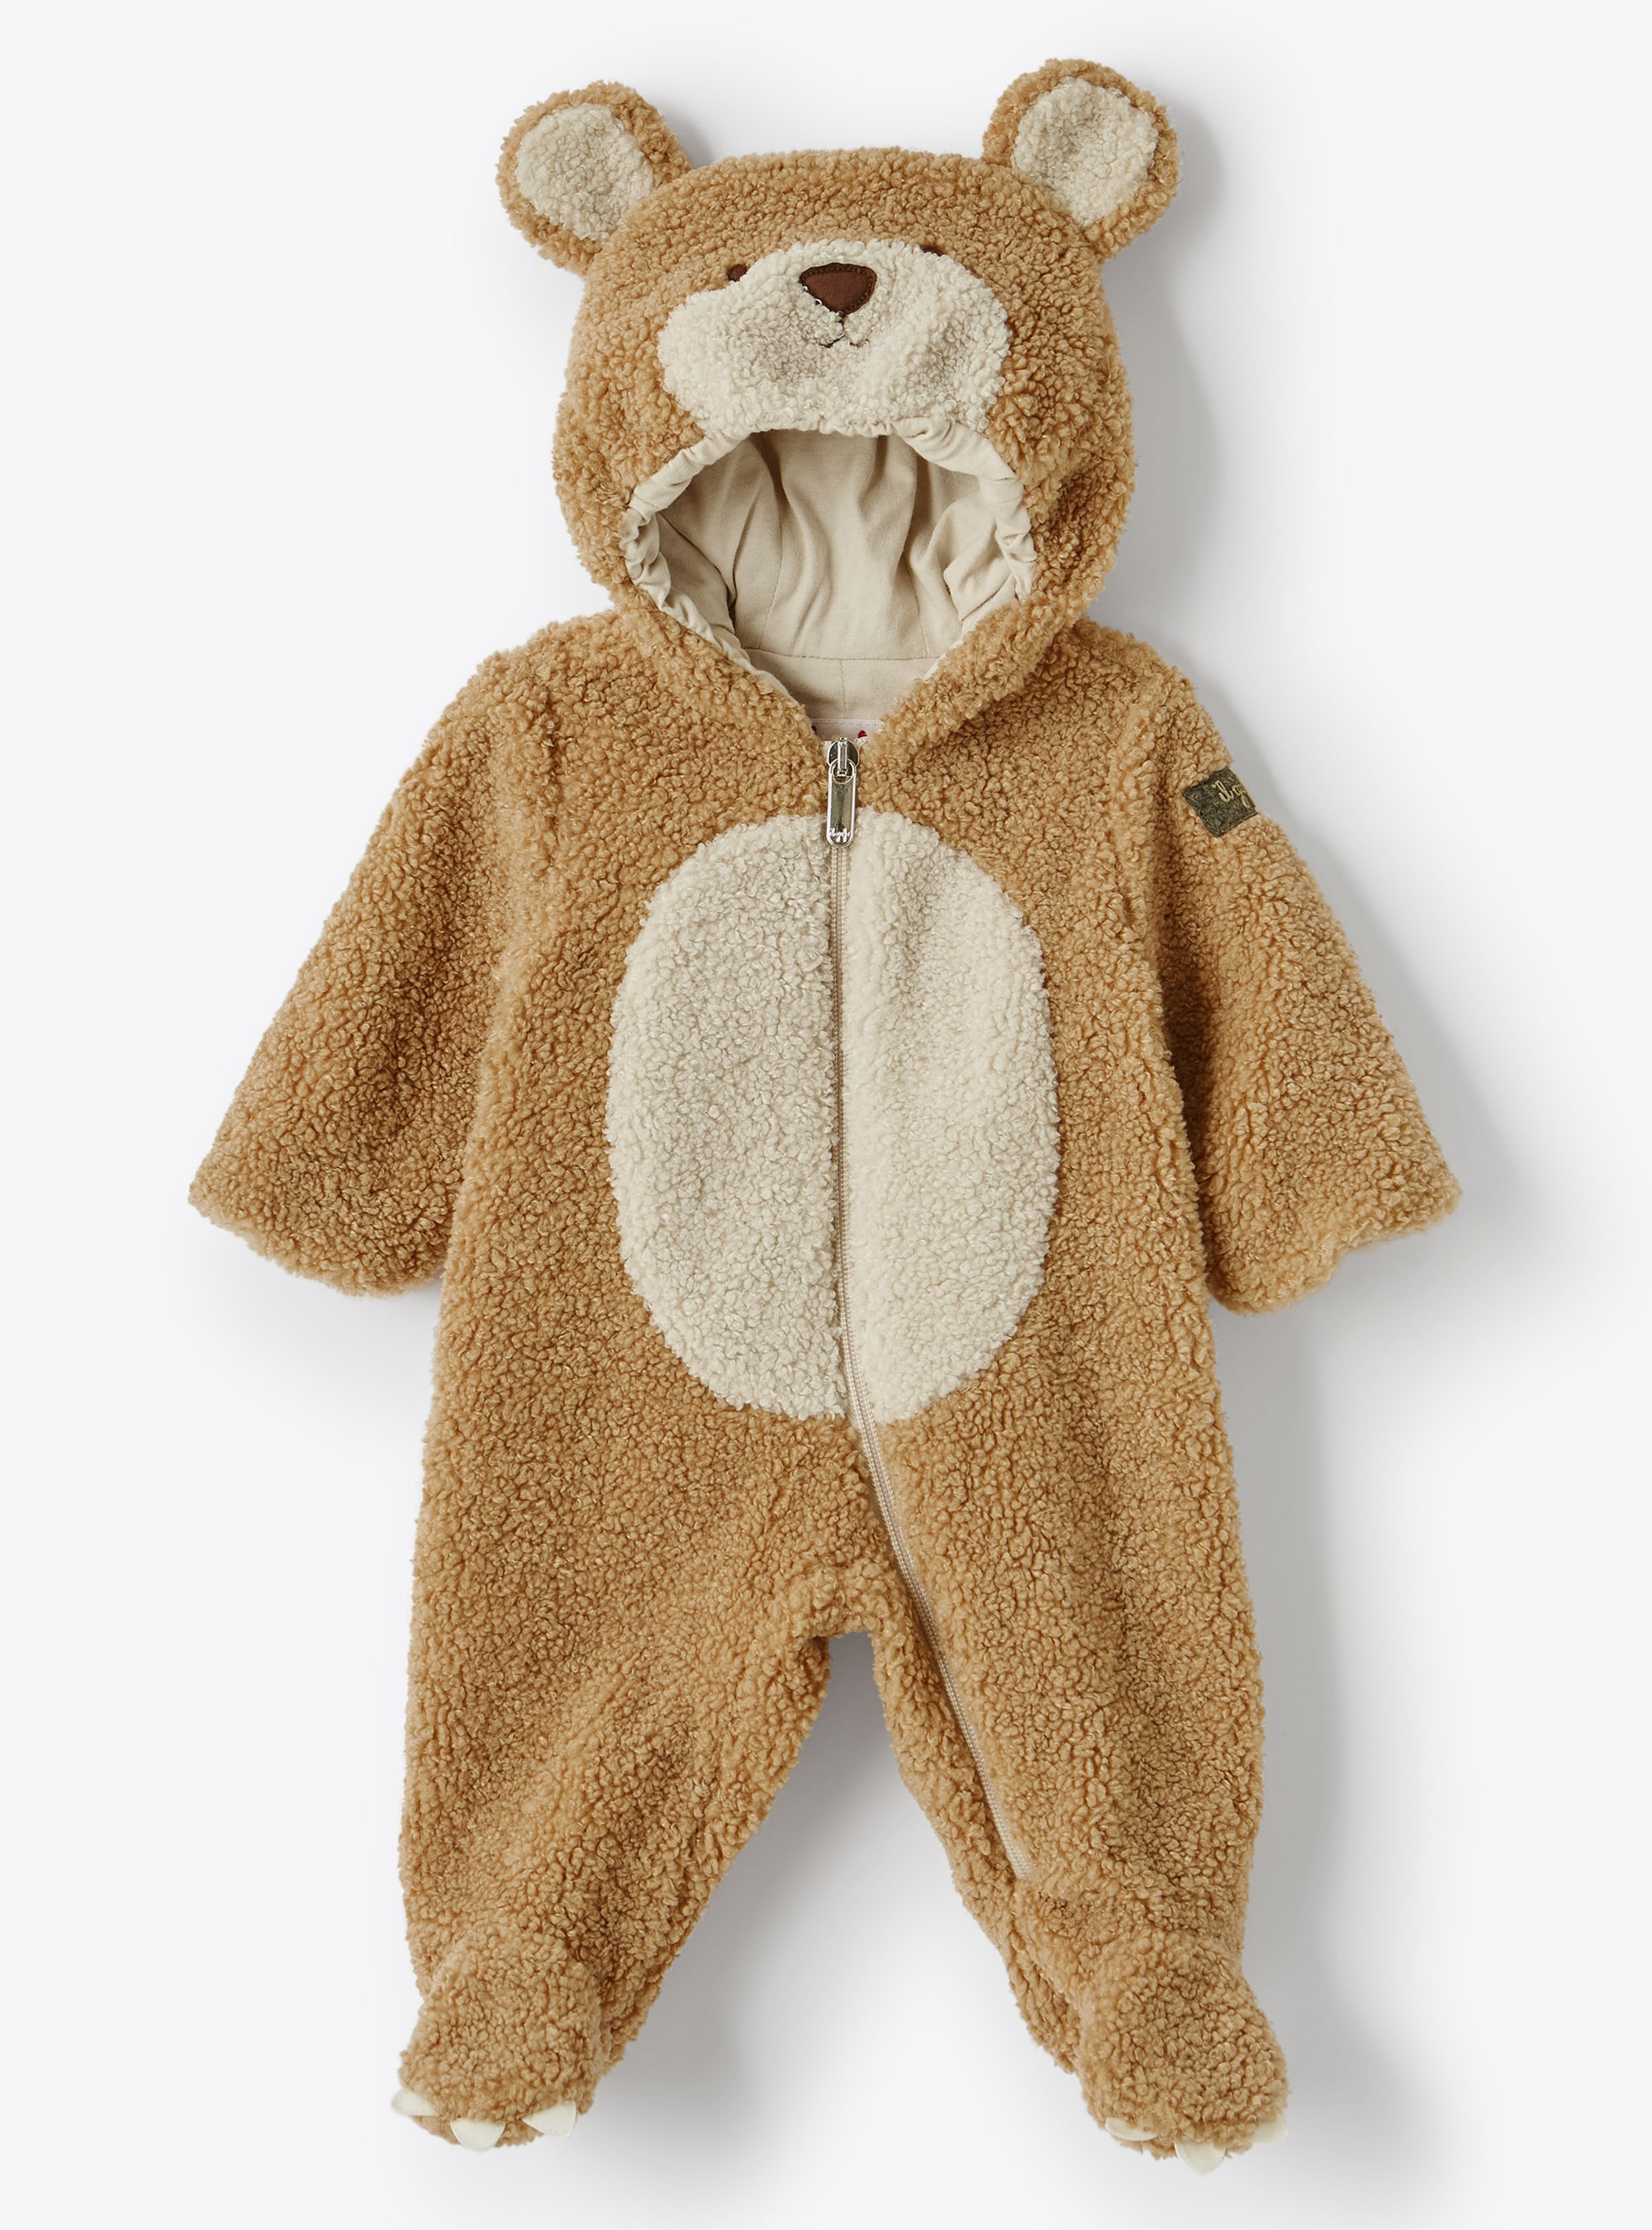 Teddy bear baby snowsuit in beige teddy fleece - Beige | Il Gufo